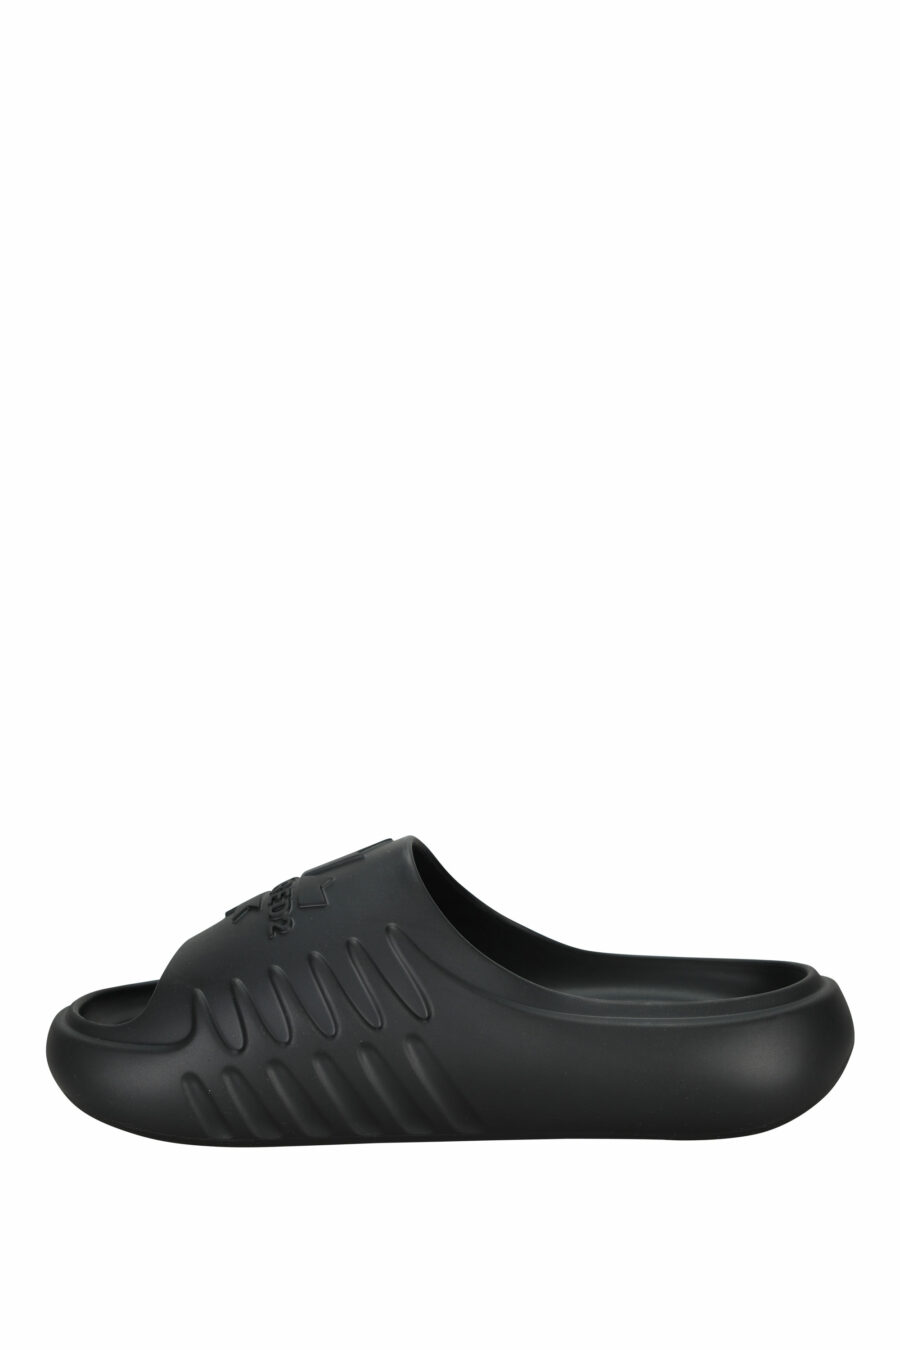 Schwarze Gummi-Flip-Flops mit einfarbigem Logo - 8055777295403 2